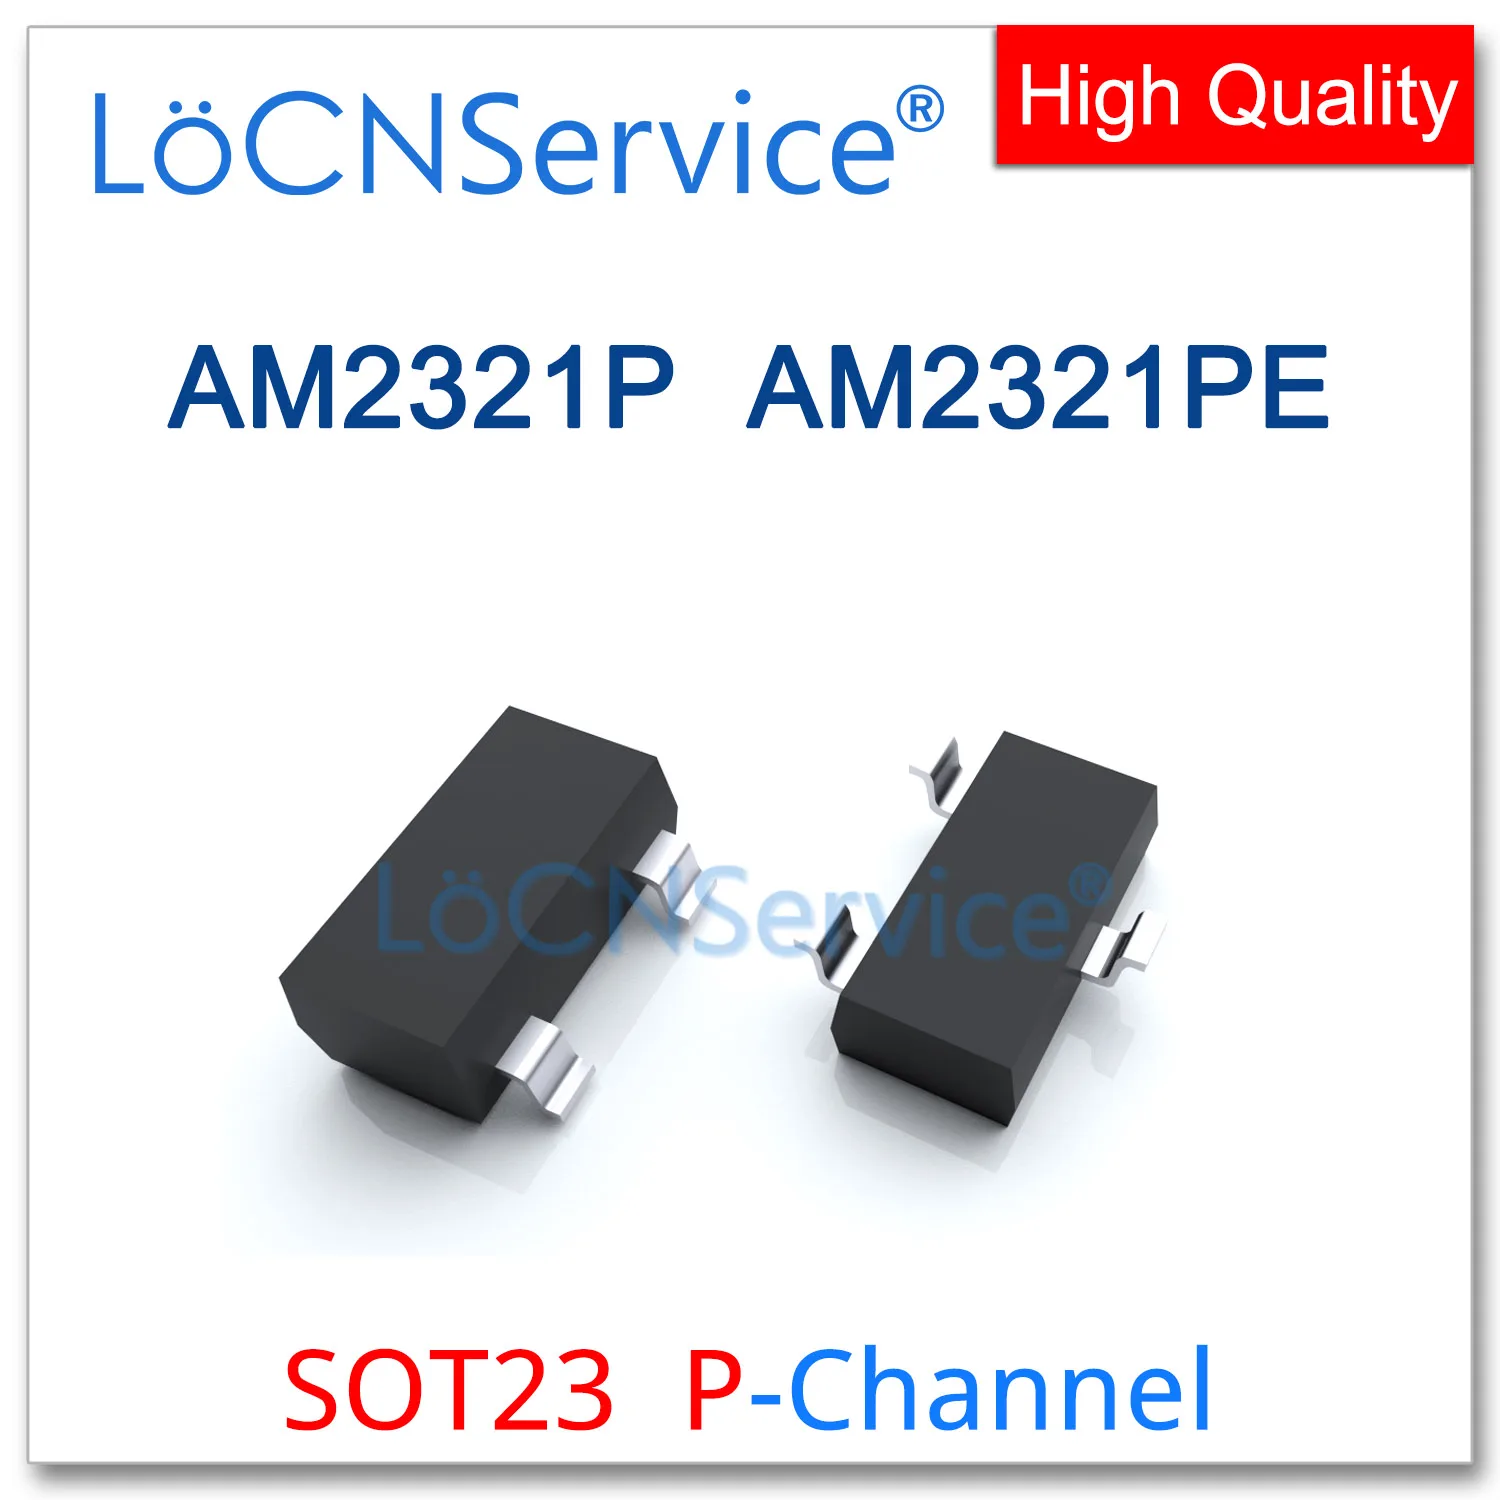 LoCNService 3000 шт AM2321P AM2321PE SOT23 P-Channel 20V Rds 70mR/79mR 90mR высокое качество сделано в Китае AM AM2321